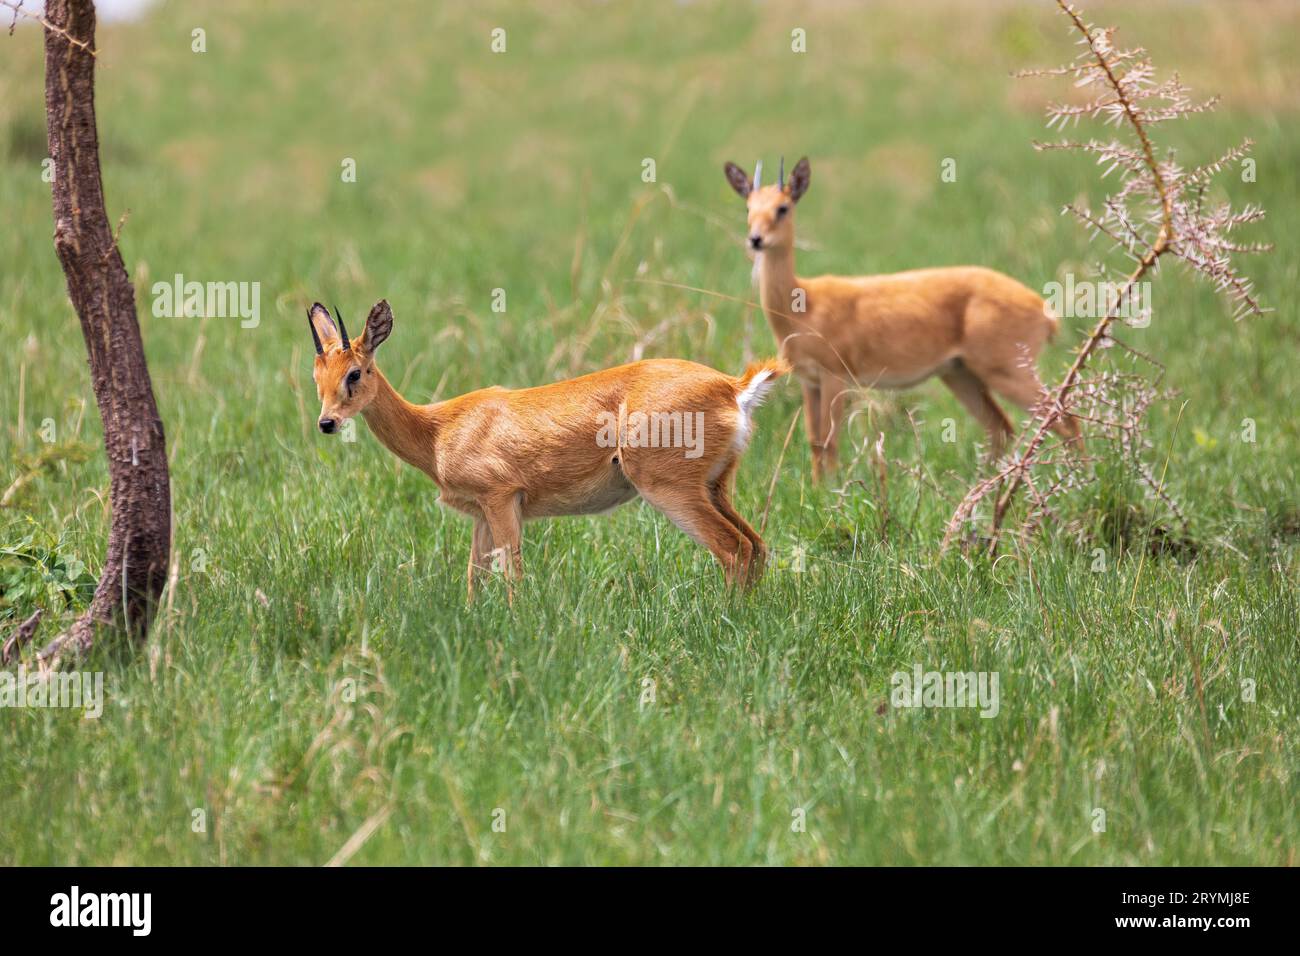 Cute Oribi endemic small antelope, Ethiopia, Africa wildlife Stock Photo